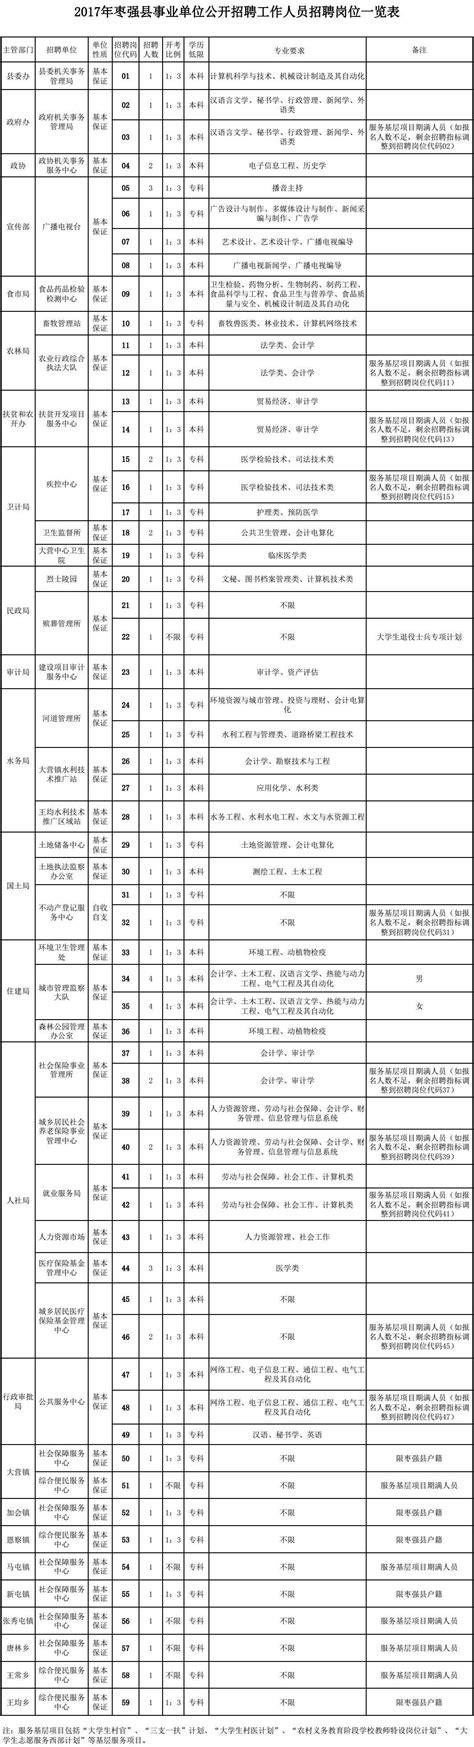 枣强县事业单位公开招聘工作人员75名